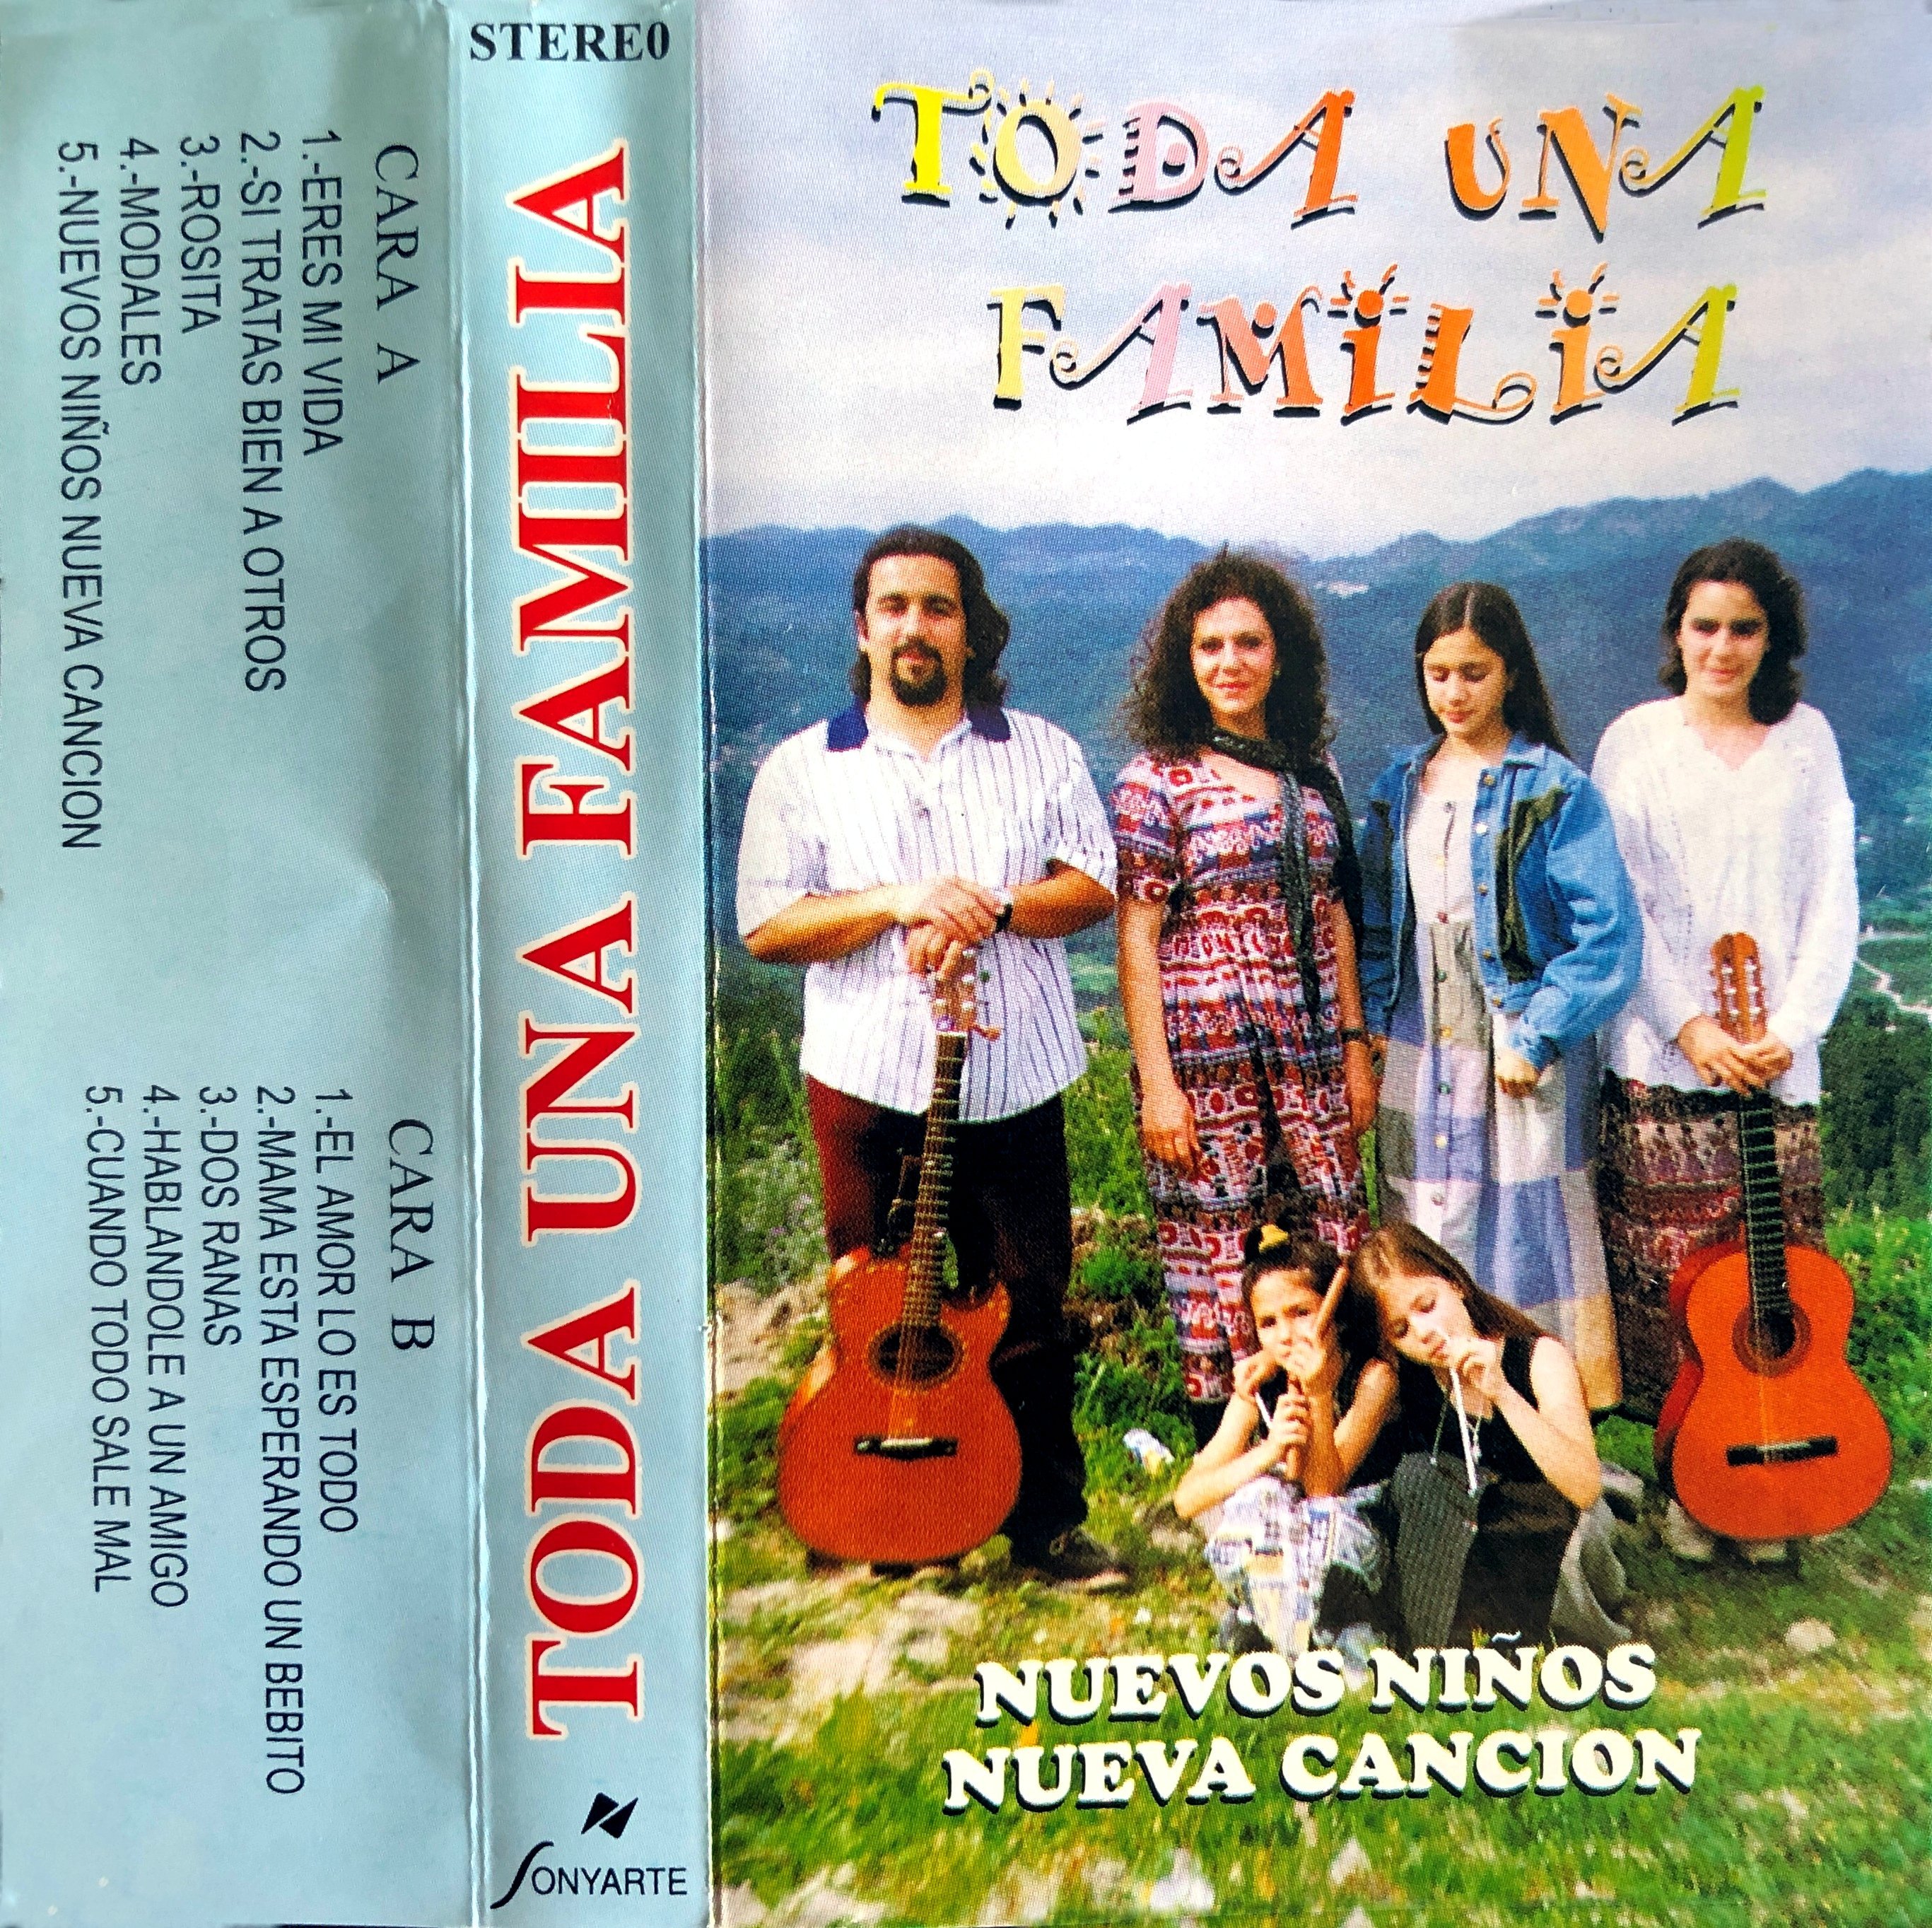 SEMPRE EN GALIZA - Música galega (1955-2010): Foliada - La mano loca -  Sonyarte CD 1016 (CD) (1997)